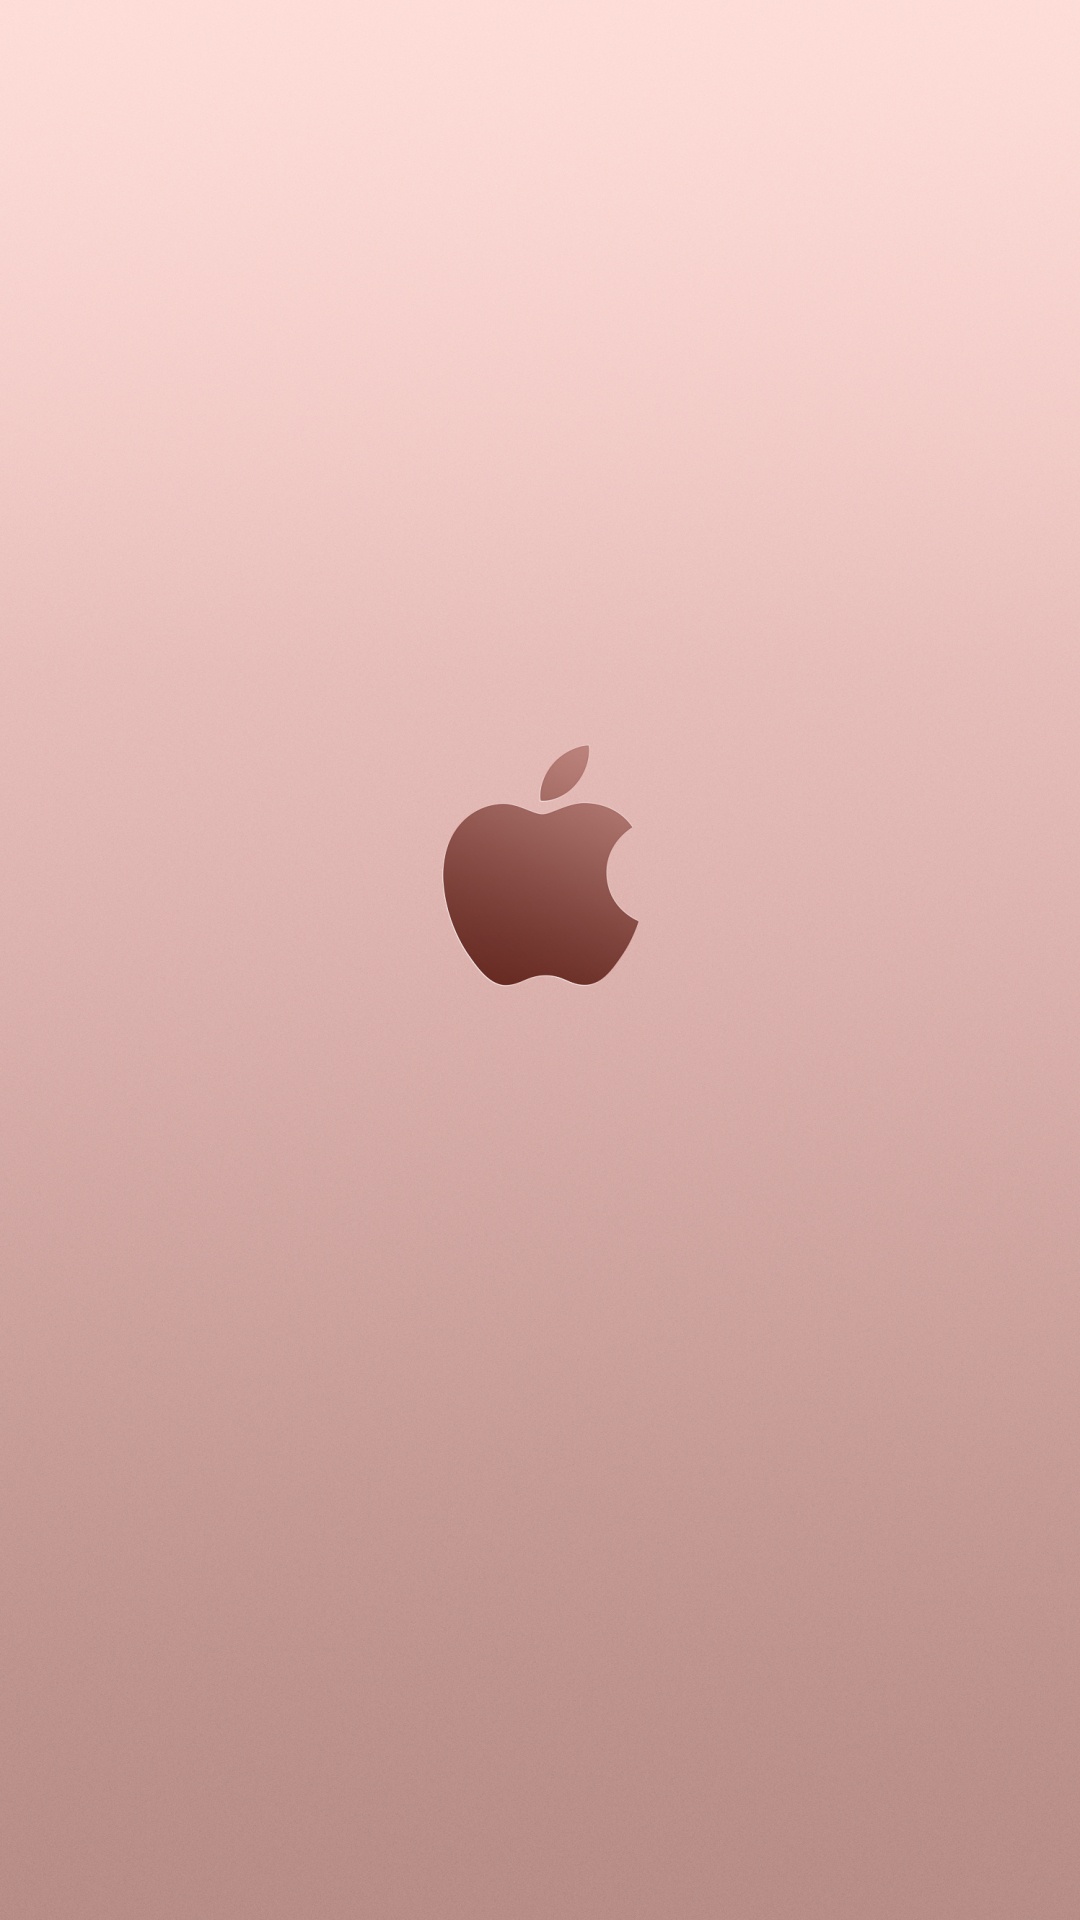 Apple, 黄金, 粉红色, 心脏, 天空 壁纸 1080x1920 允许